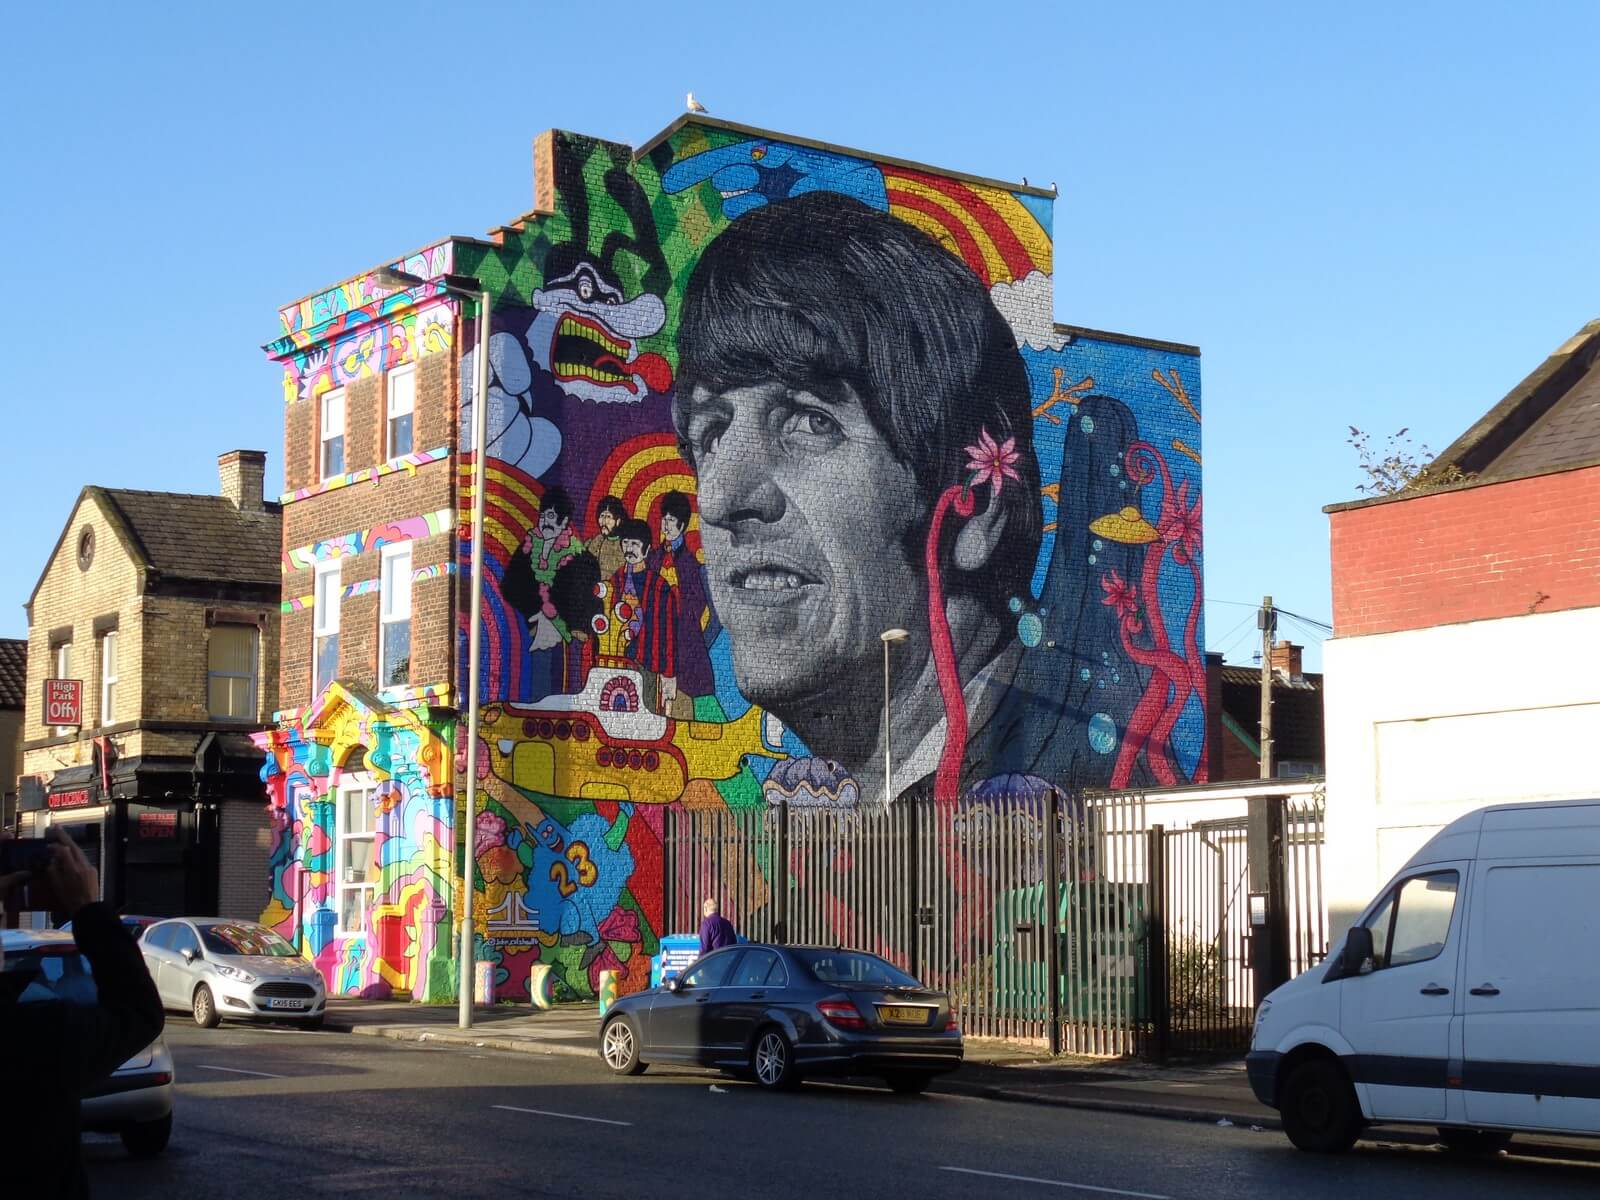 Foto: Wandgemlde mit Ringo Starr in Liverpool - Lupe Reisen